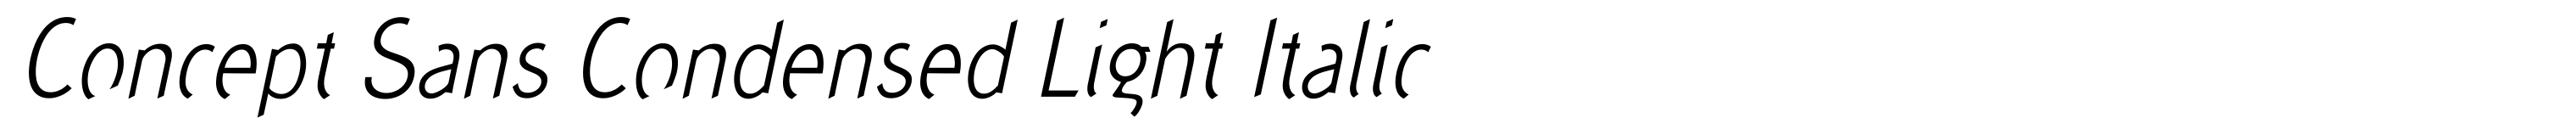 Concept Sans Condensed Light Italic